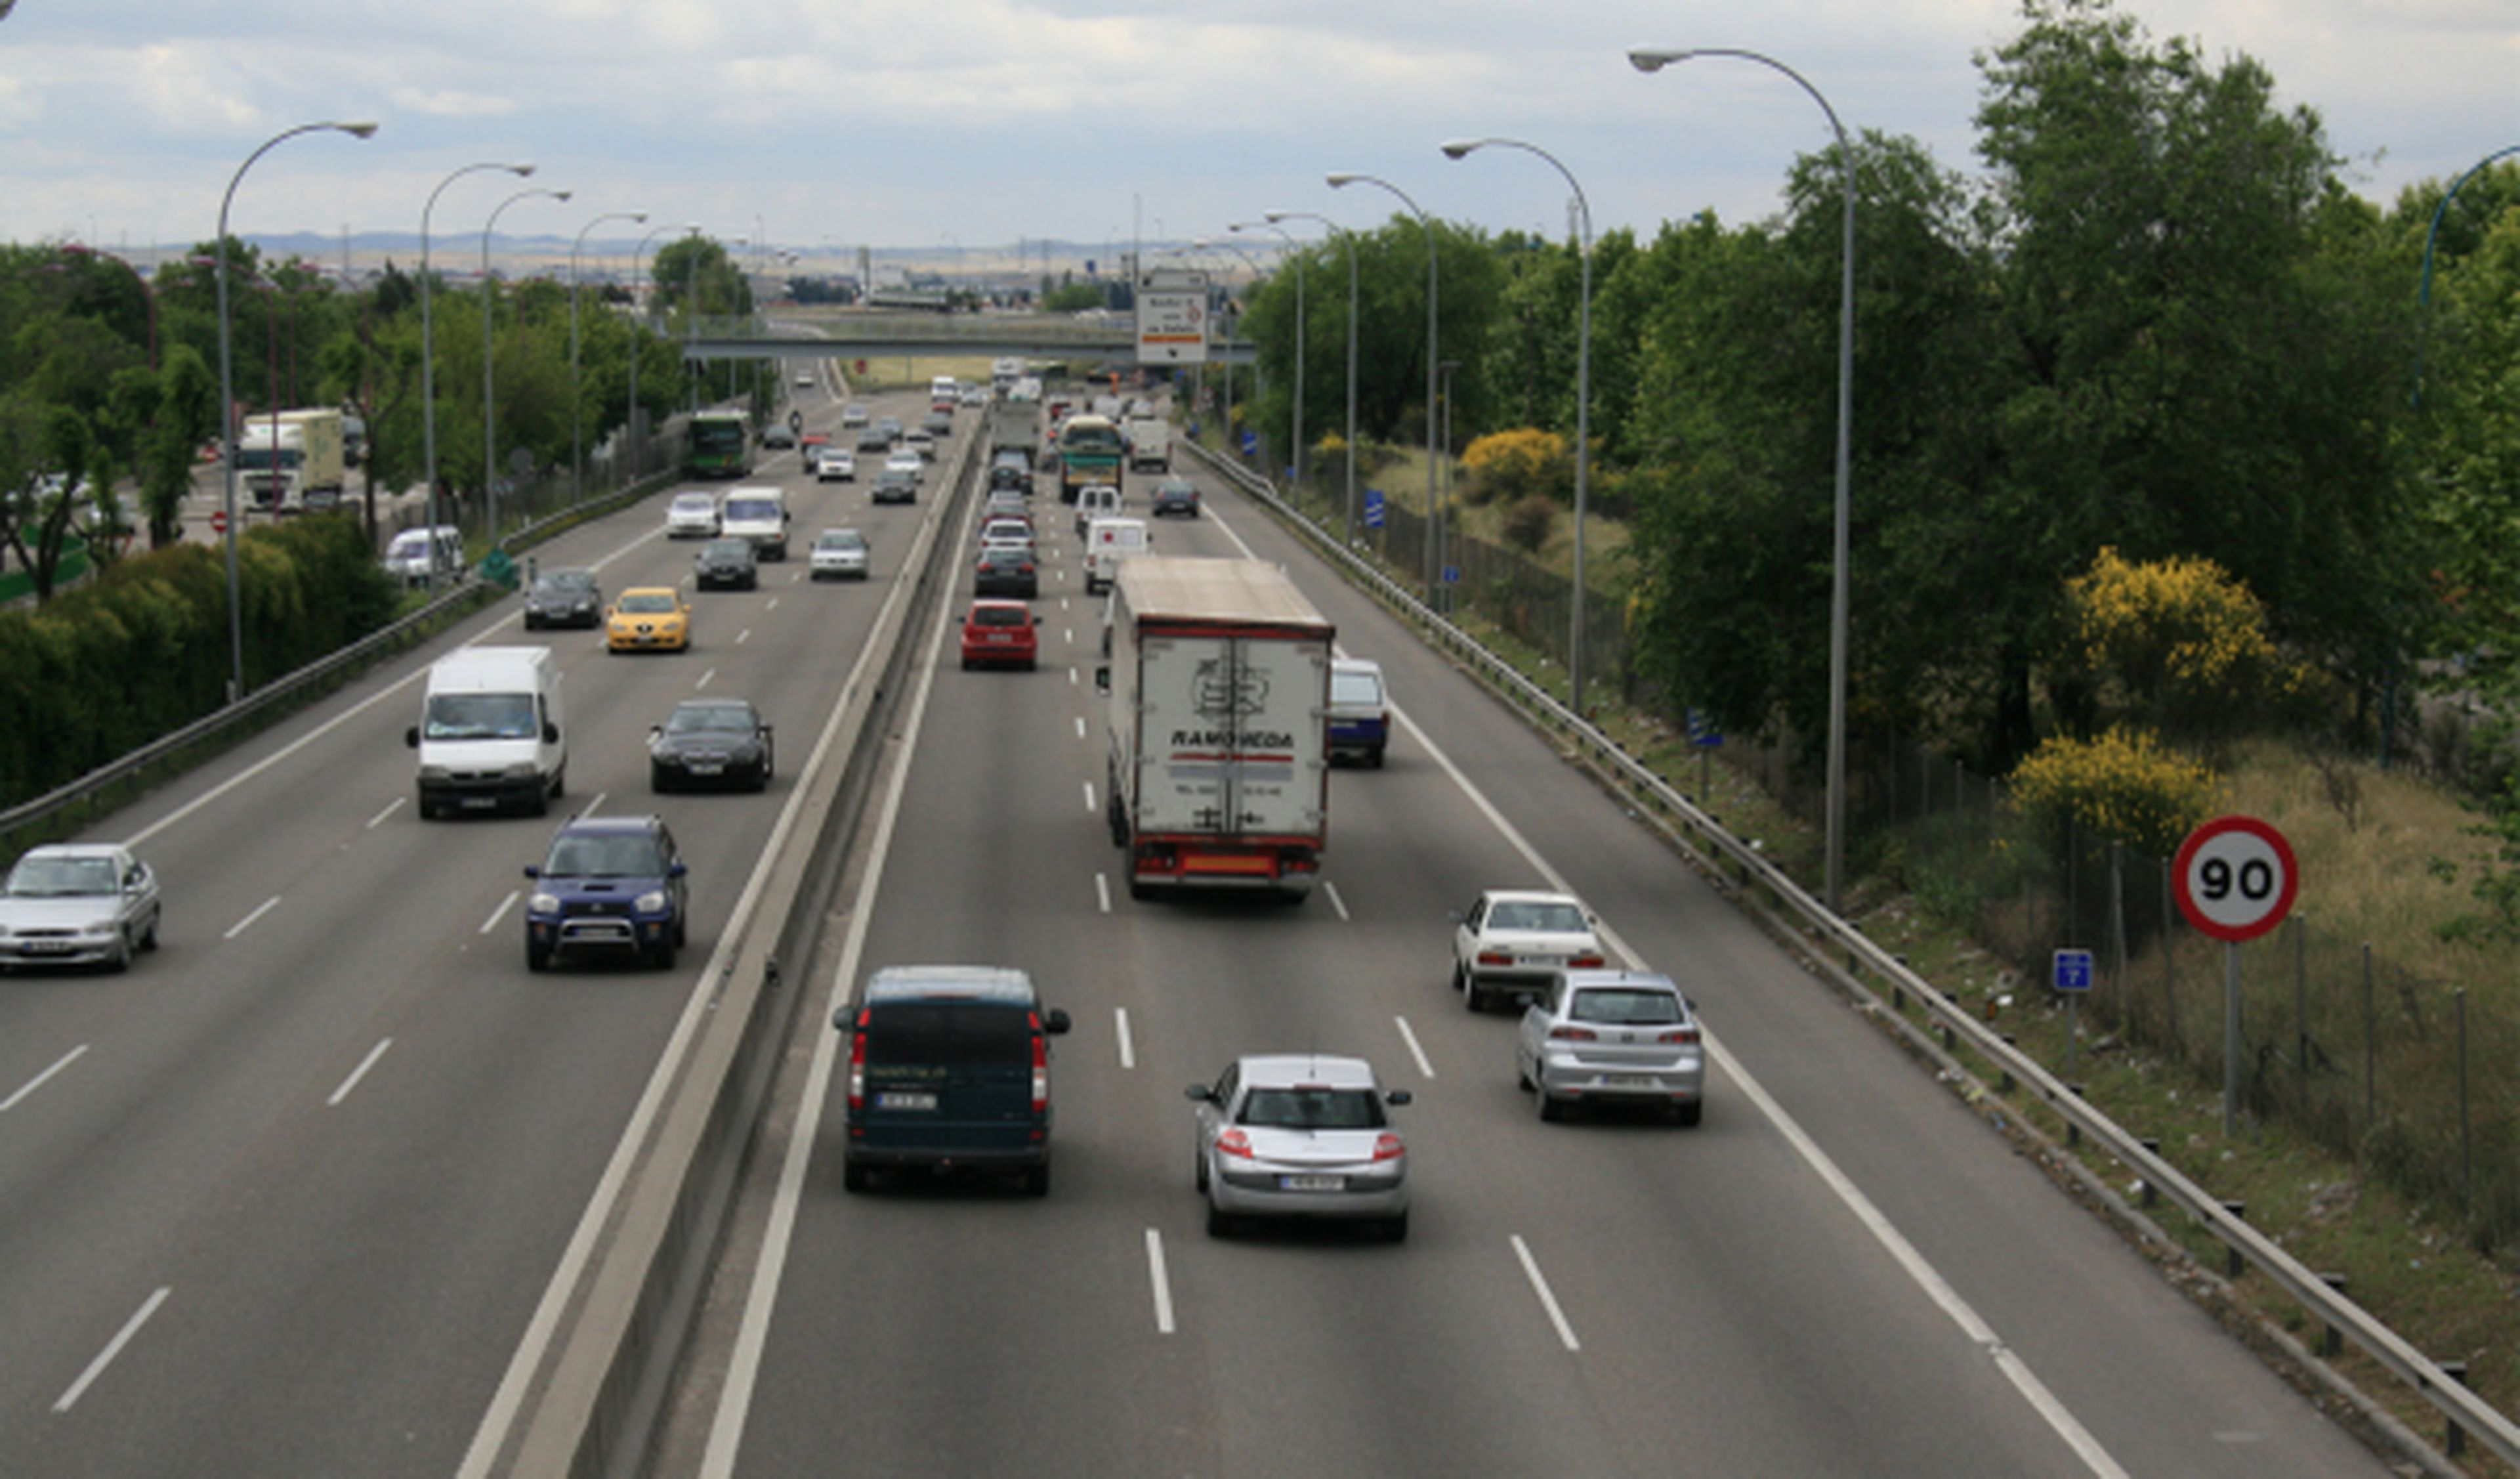 Holanda apagará las luces en algunas autopistas para ahorrar costes